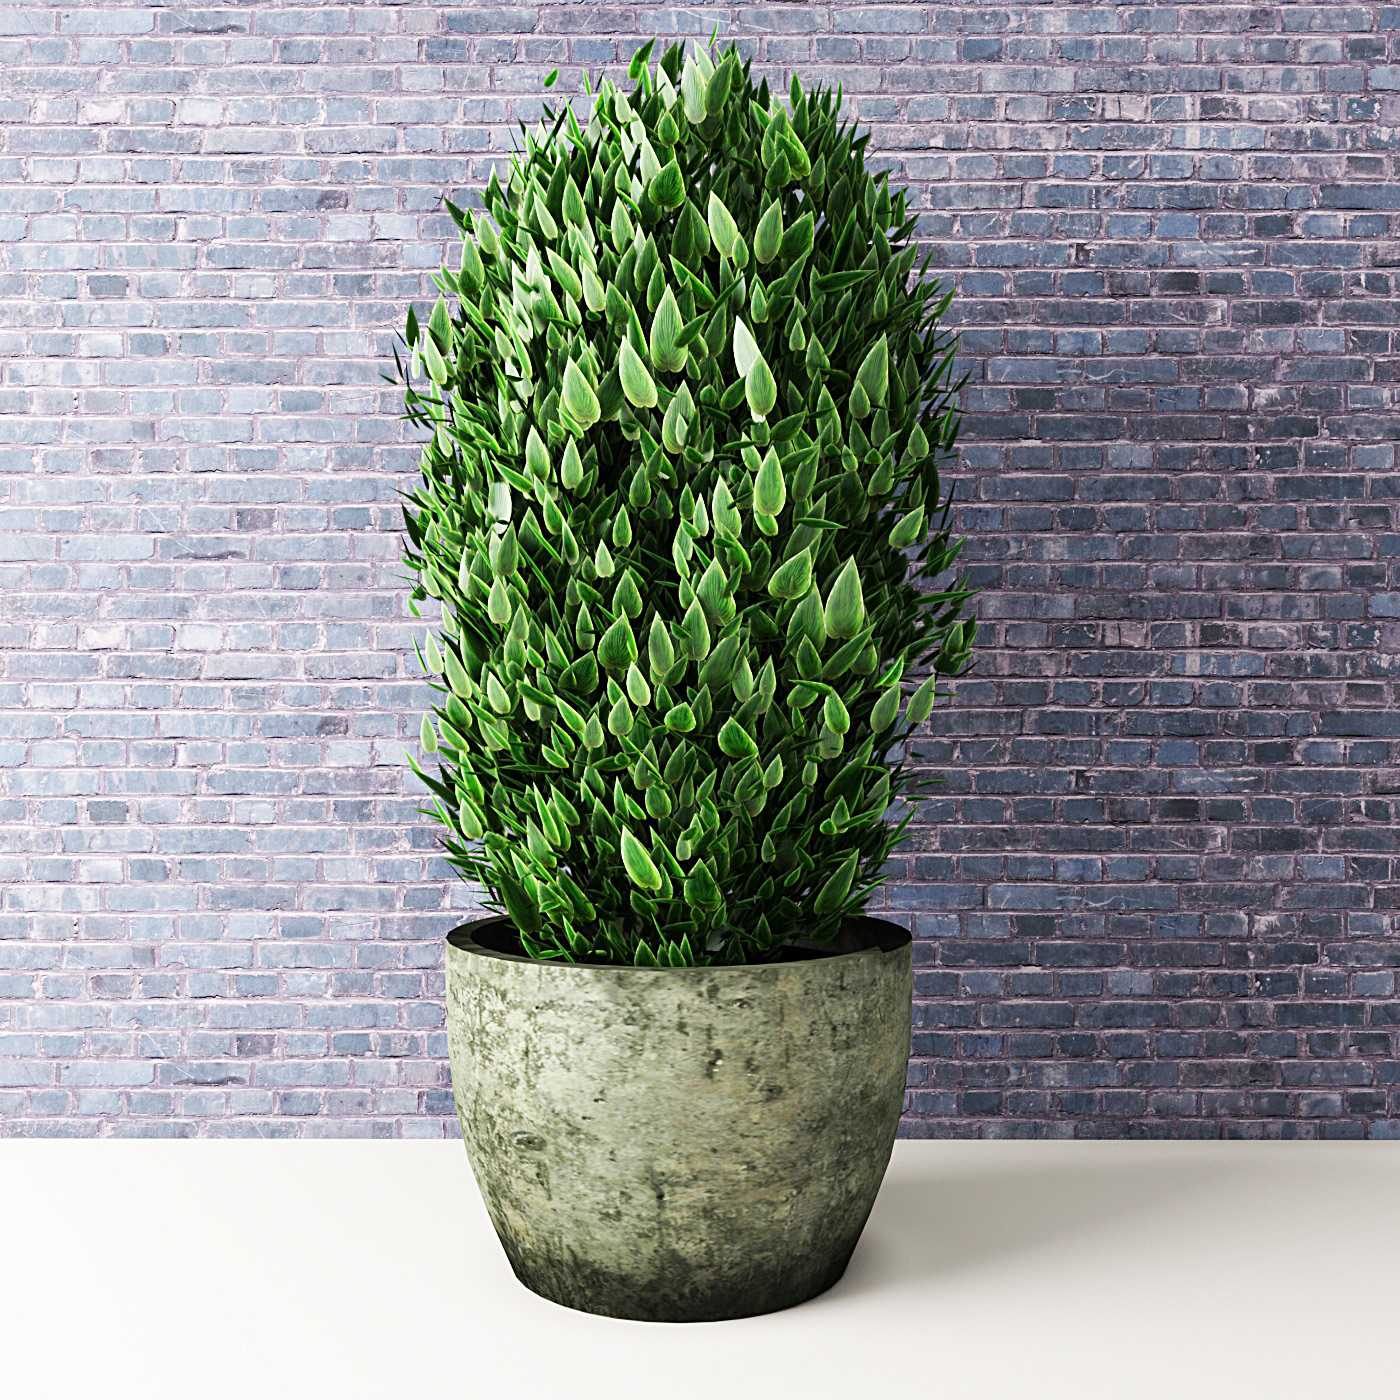 3dlancernet  Комнатные растения  Растения  Скачать 3d Модели Для 3d Визуализации  Каталог 3d Моделей  Для 3d Max И Других Программ